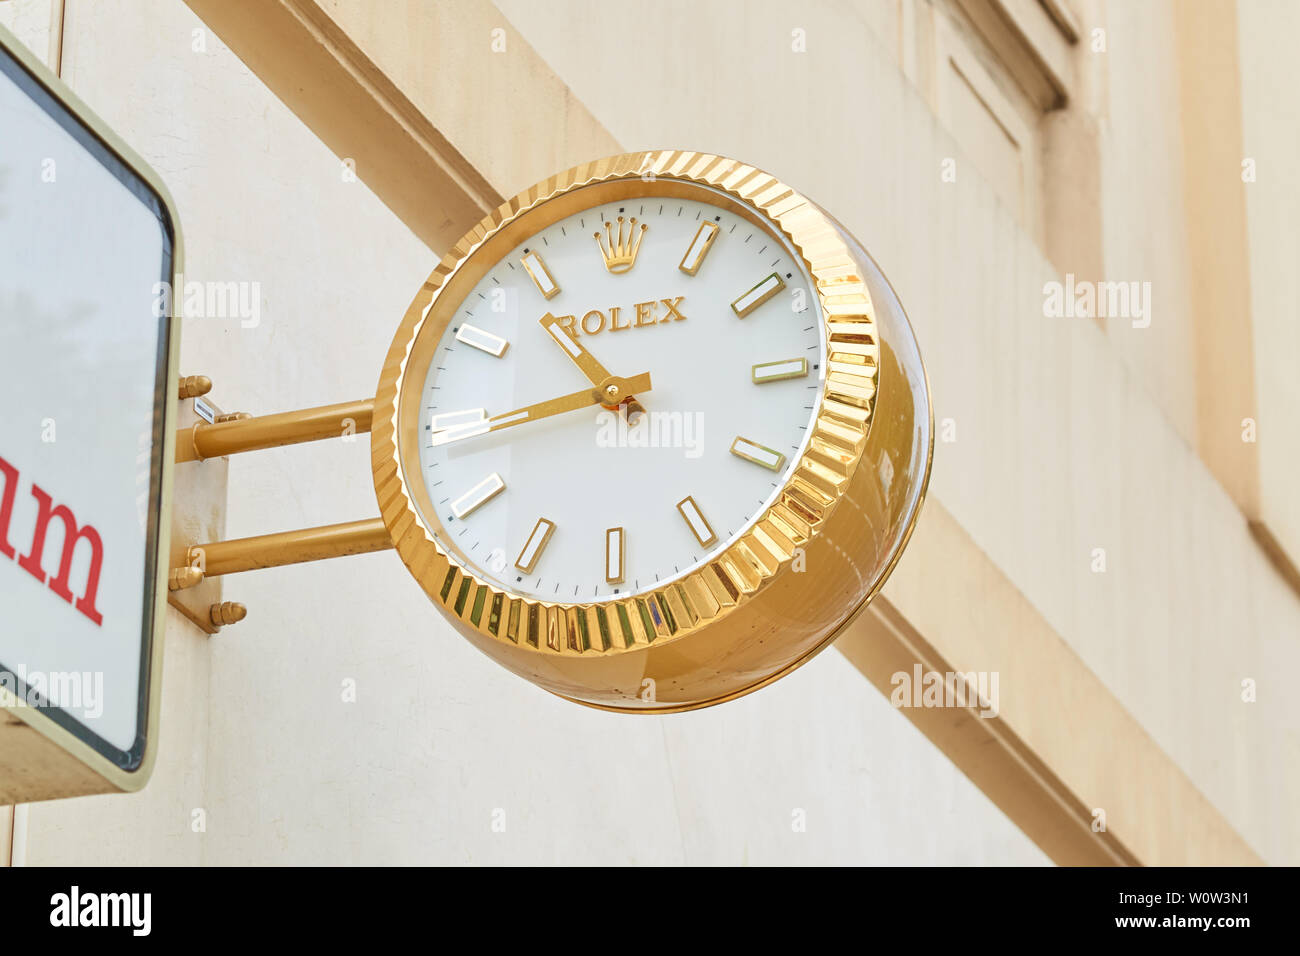 MONTE CARLO, MONACO - AUGUST 20, 2016: Rolex golden clock close to jewelry sign, luxury store in Monte Carlo, Monaco. Stock Photo